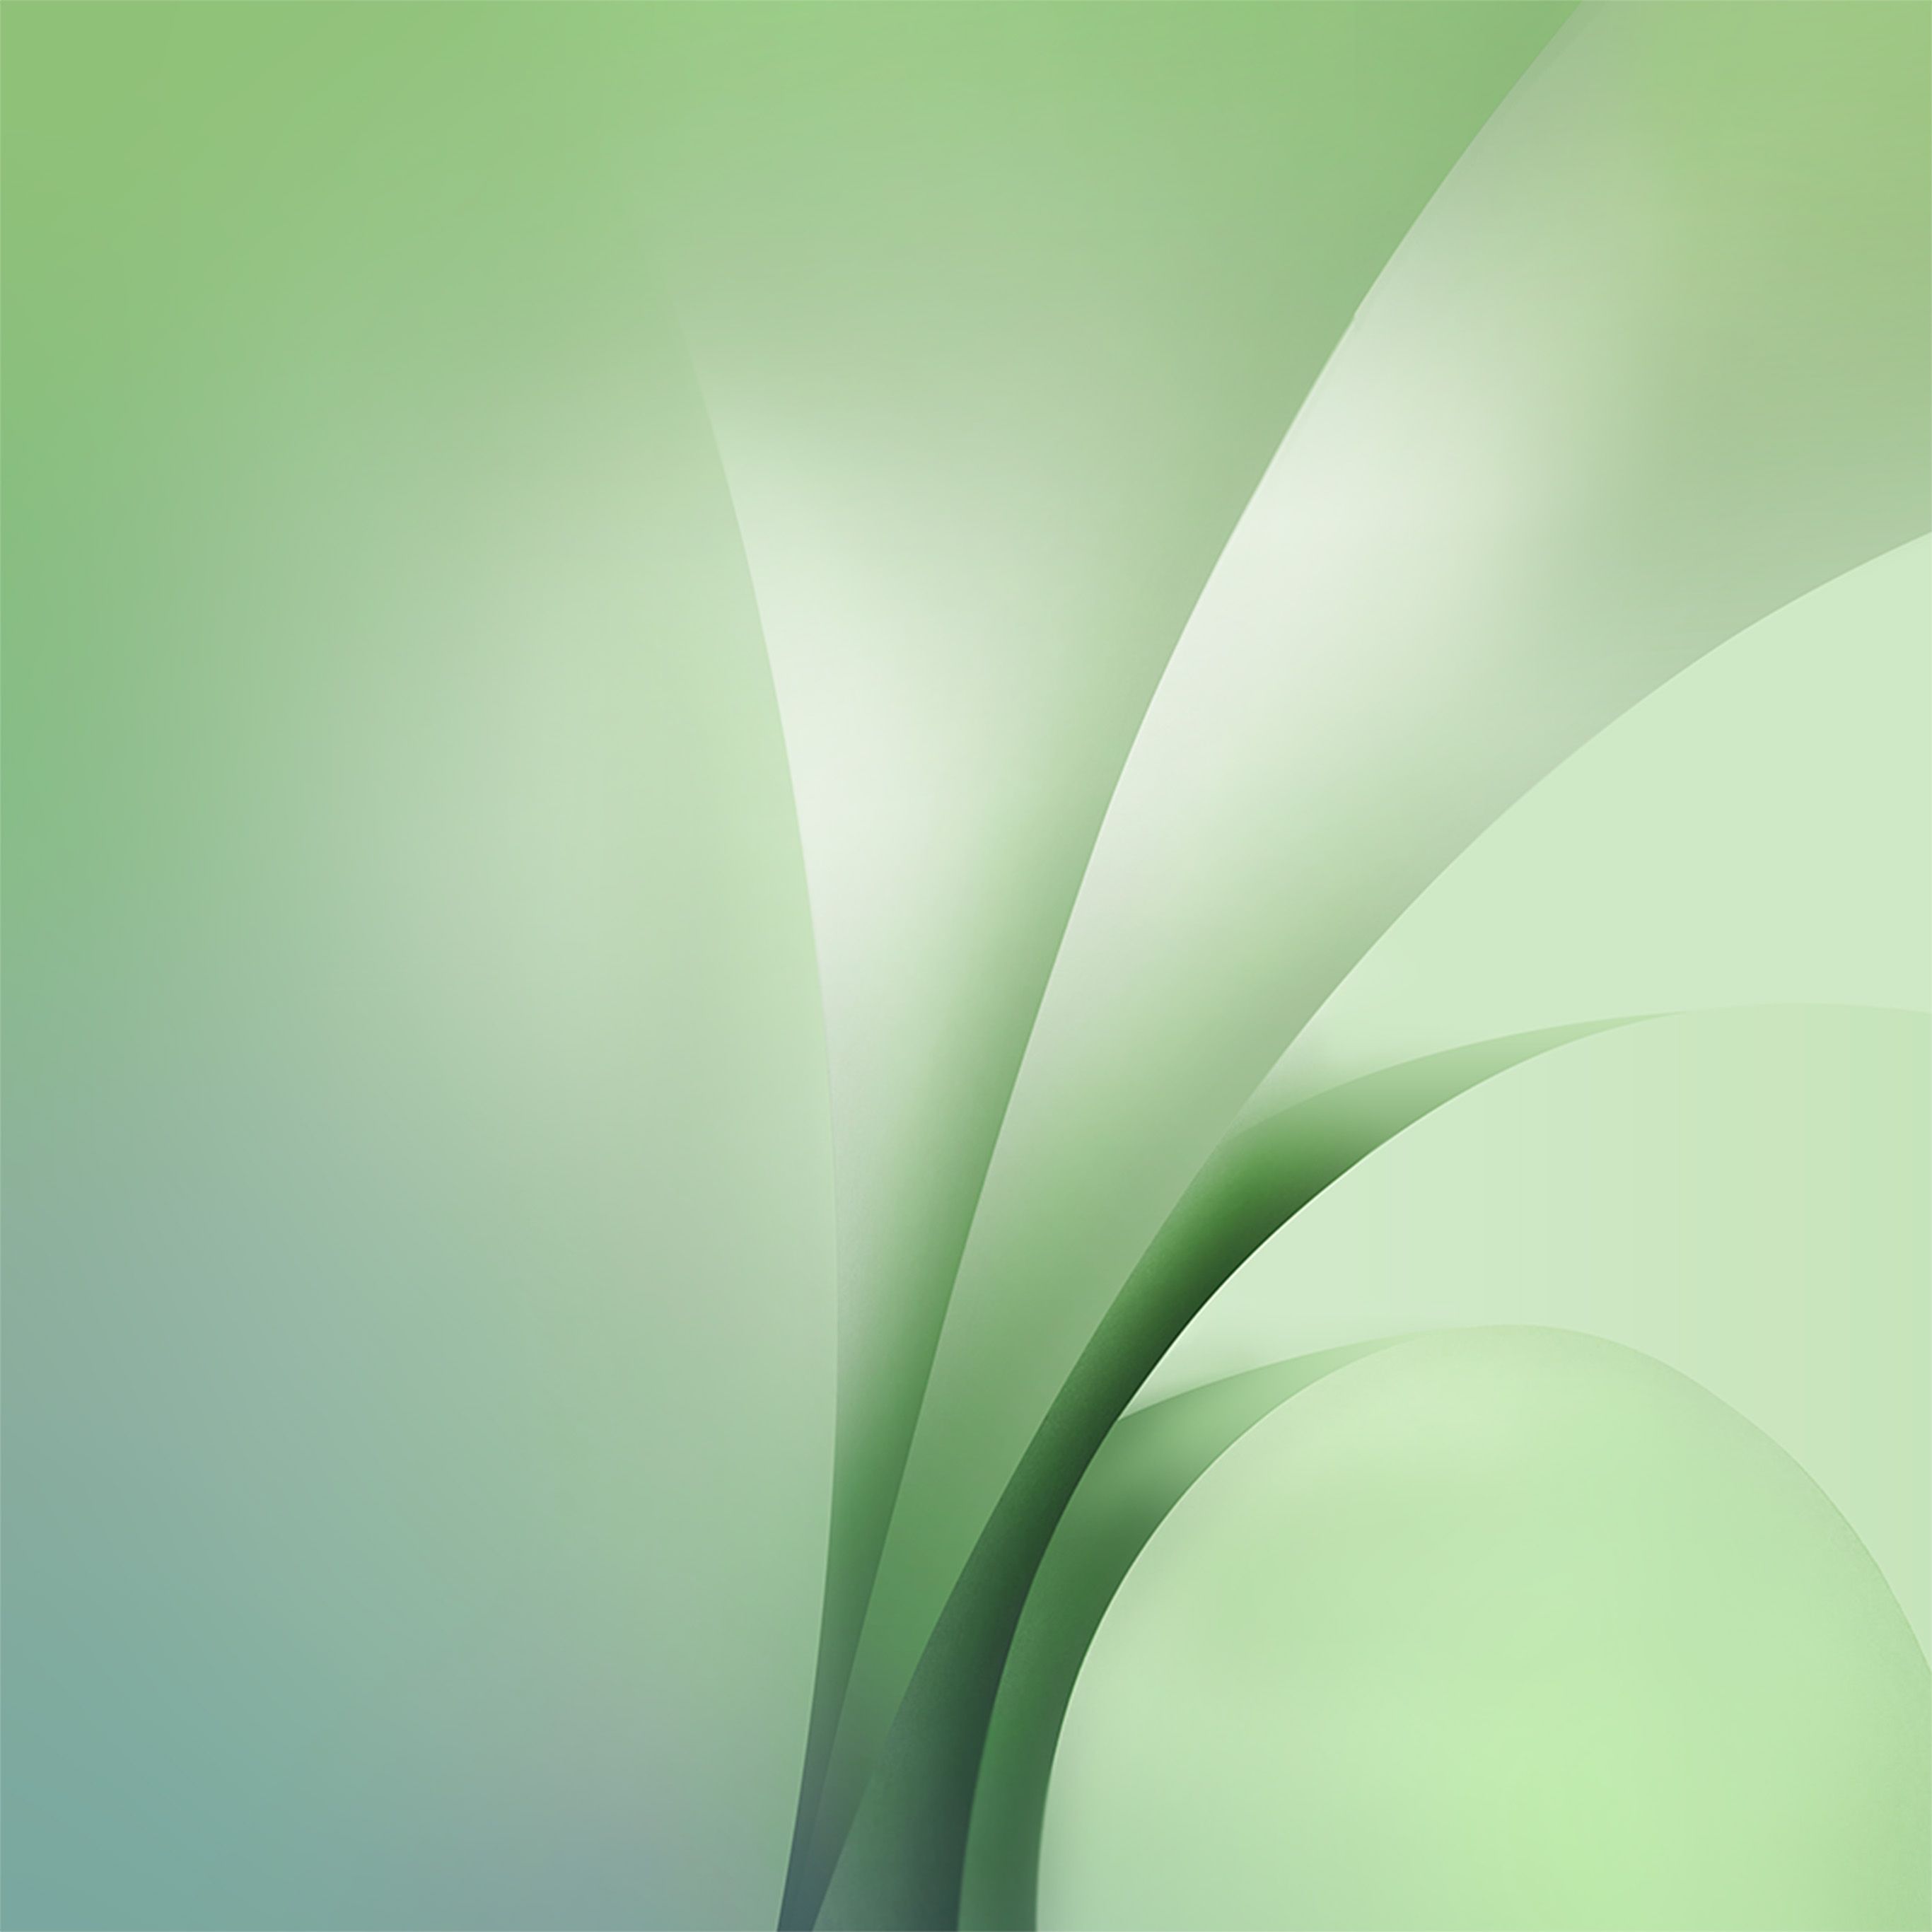 Fondos de pantalla inspirados en verde para iPad y iPhone XS Max